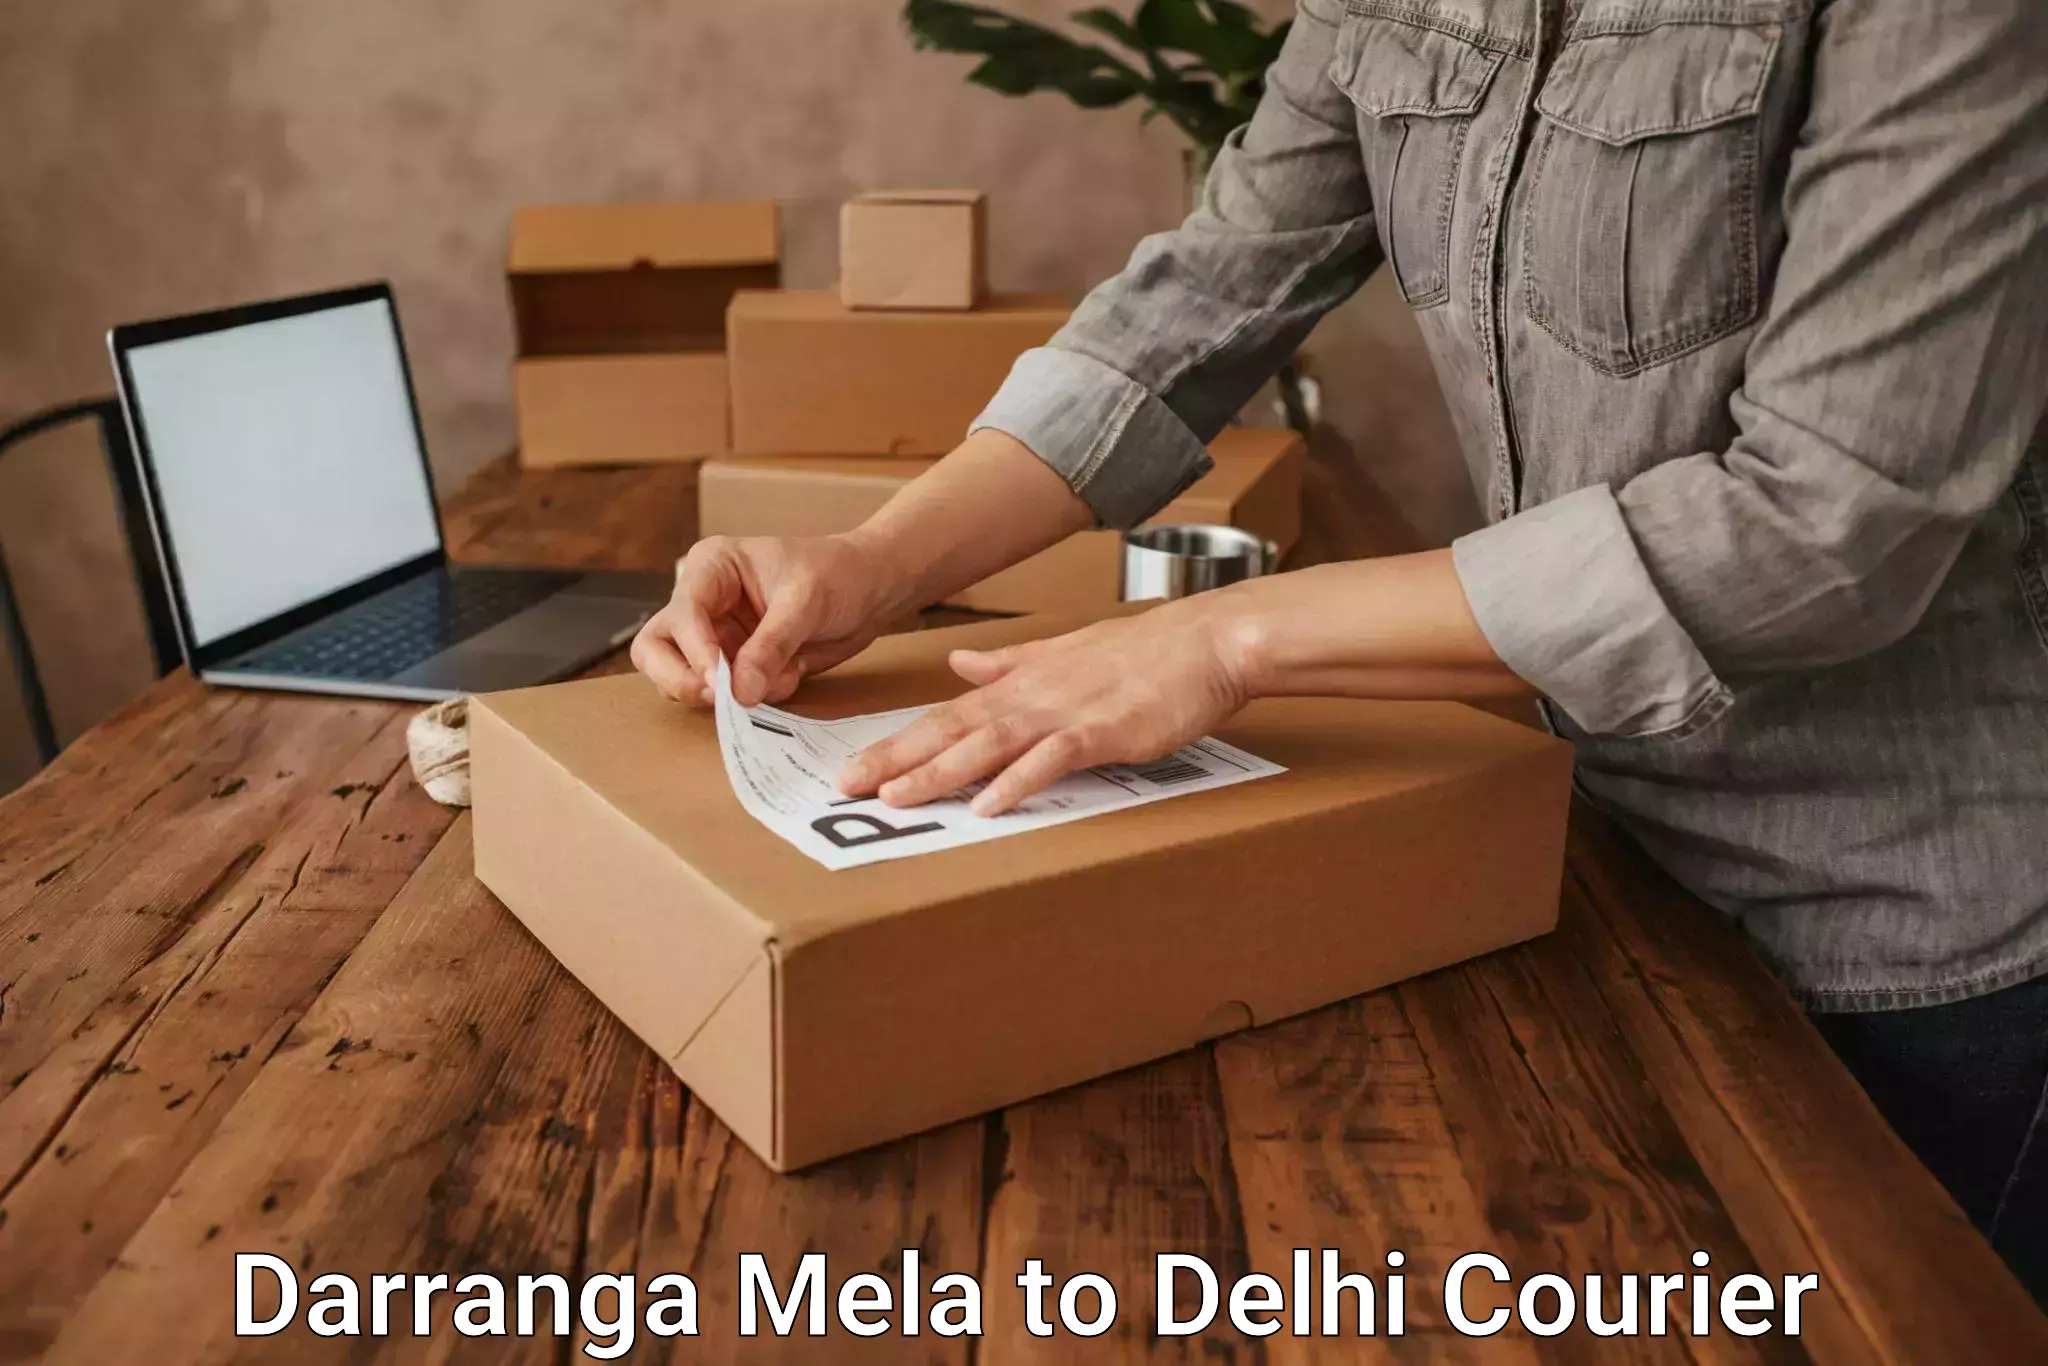 24-hour courier services Darranga Mela to Delhi